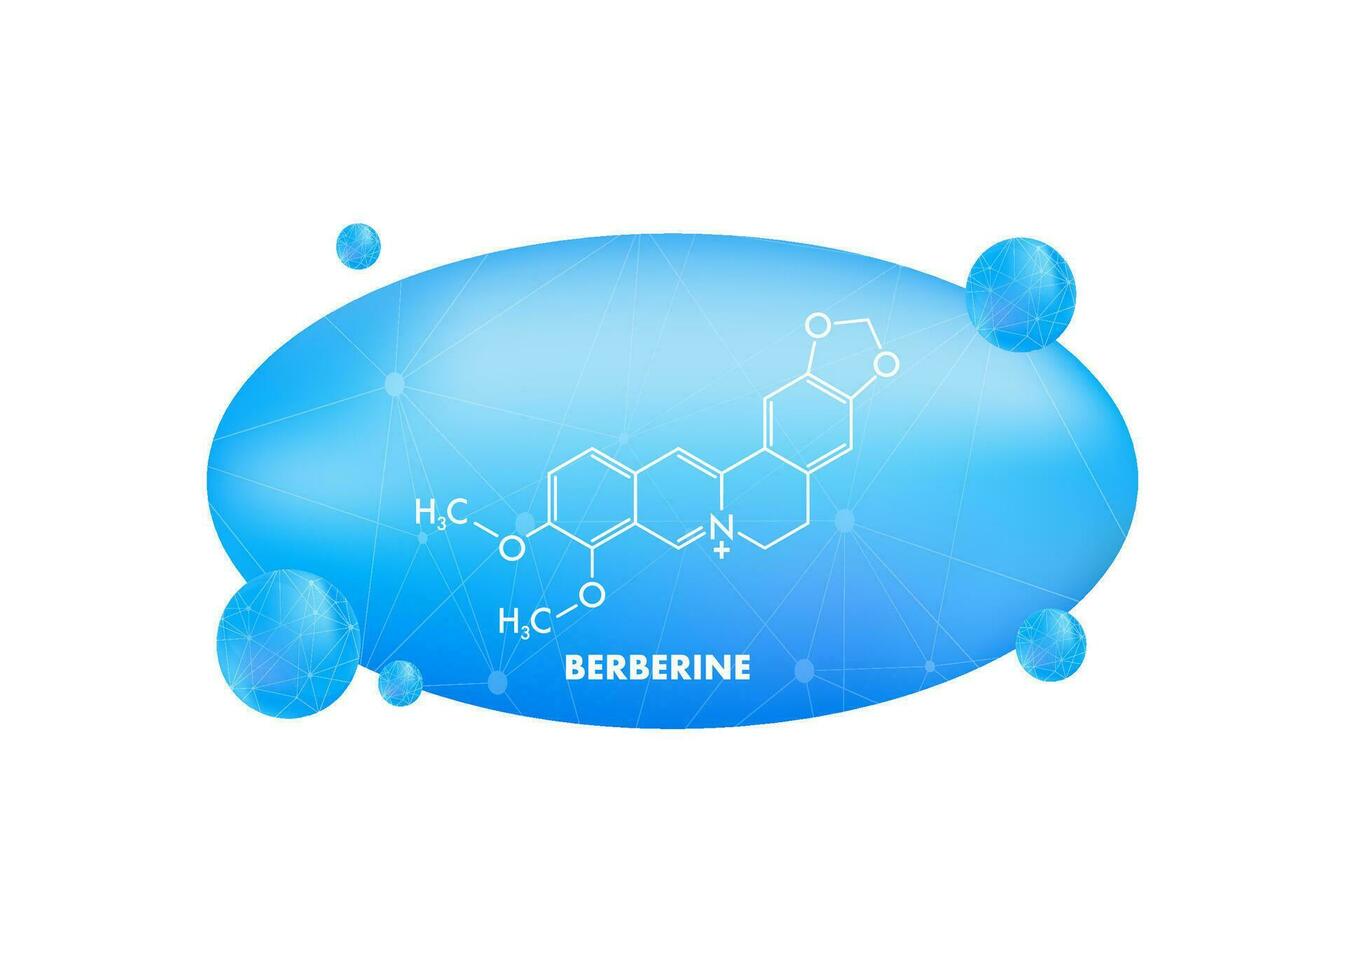 berbérine concept chimique formule icône étiqueter, texte Police de caractère vecteur illustration.